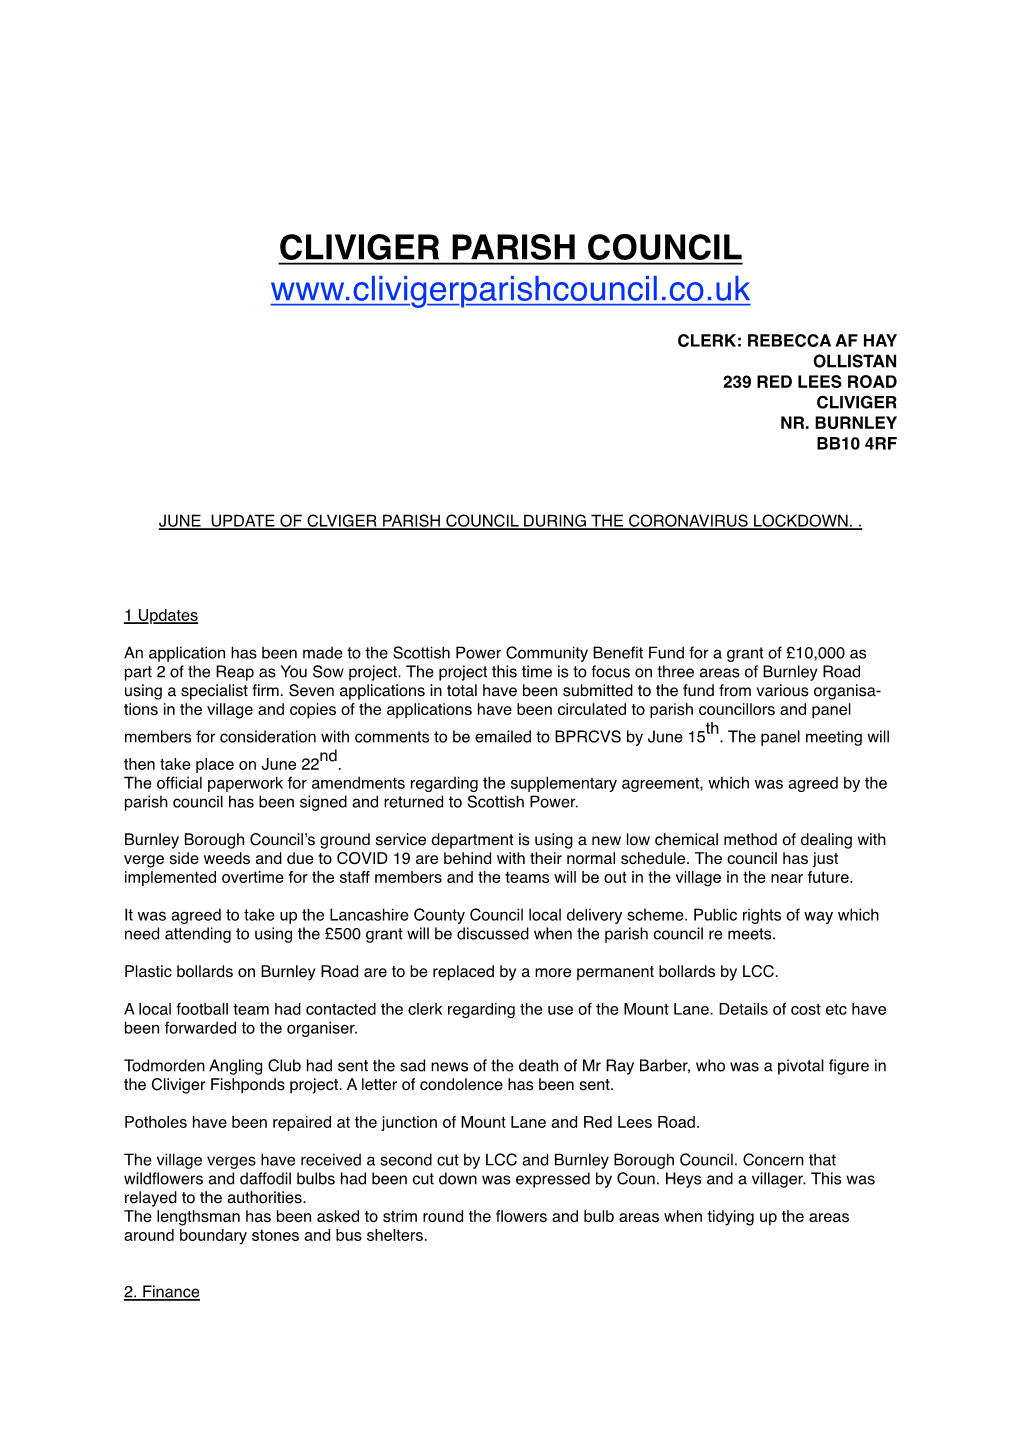 Cliviger Parish Council